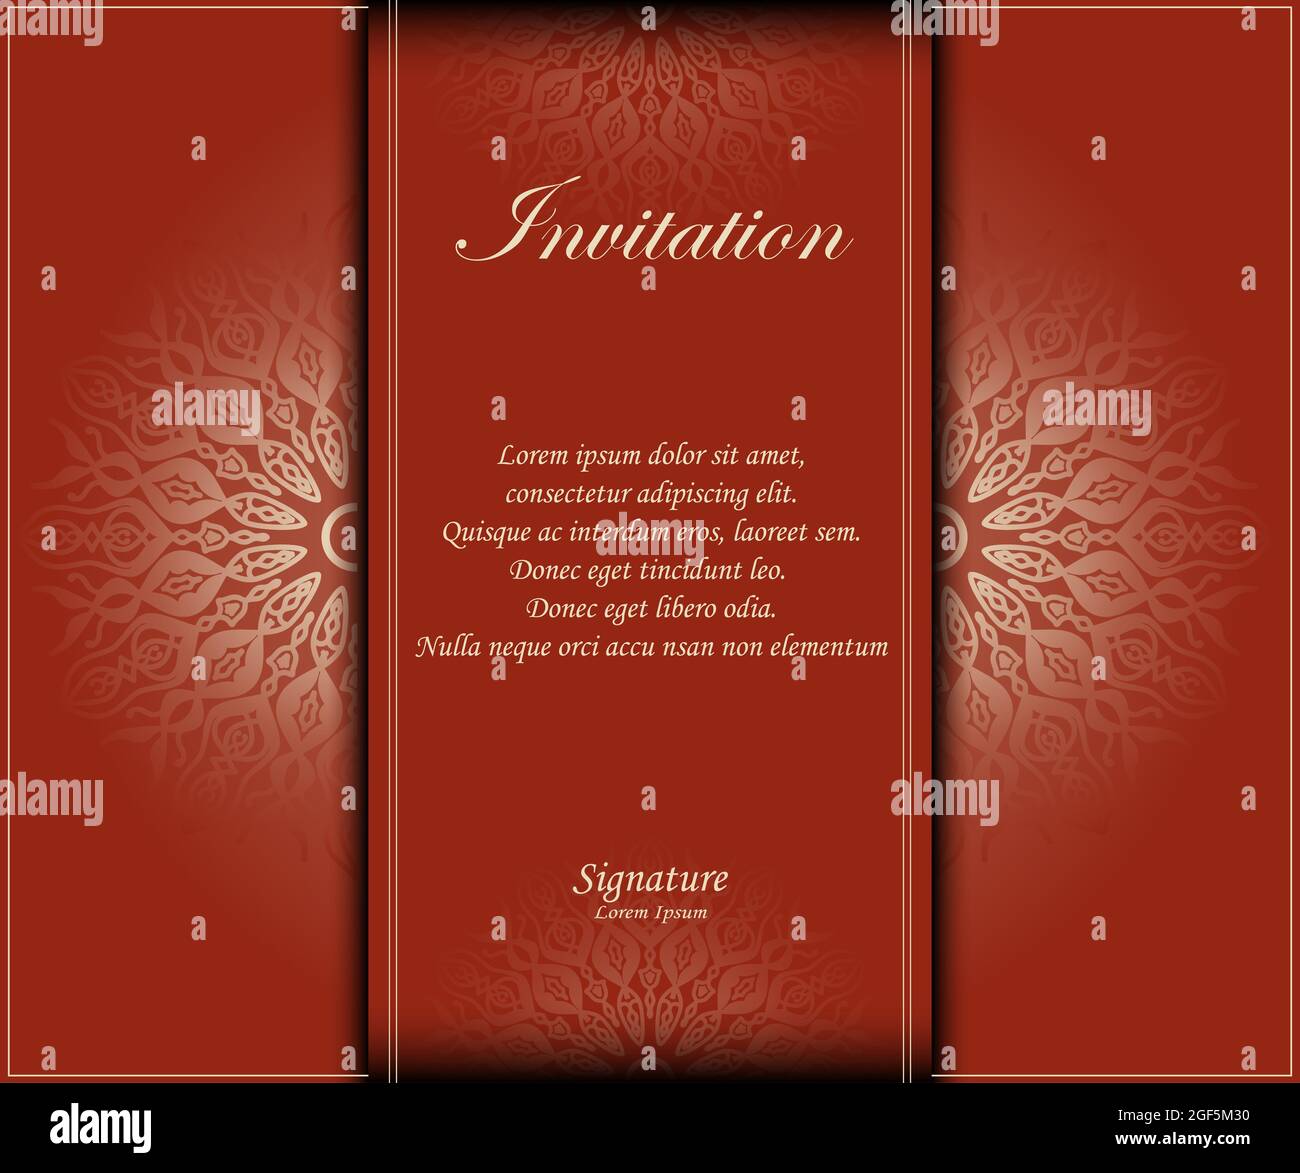 invitation classique de fond mandala, idéal pour le matériel de conception d'invitation, carte de voeux, promotion des ventes, bannière, affiche Banque D'Images